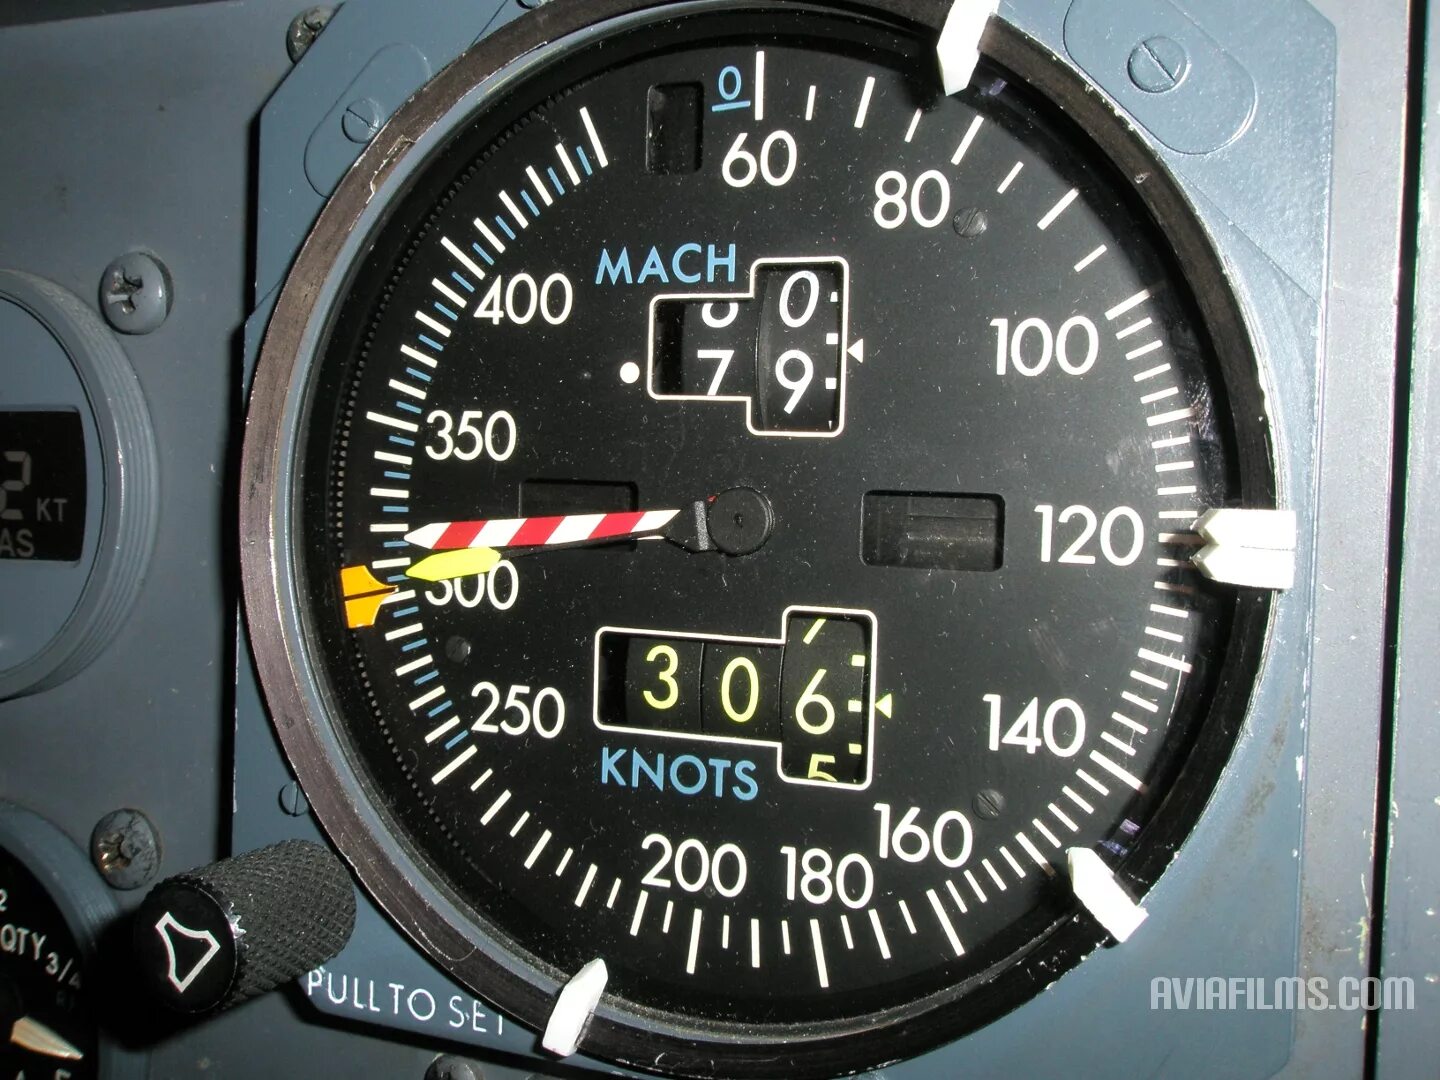 Приборы Boeing 737 приборы скорости. Standby Altimetre/Airspeed indicator b737. Altimeter в Боинг 737. Указатель скорости Winter 6 FMS 4.